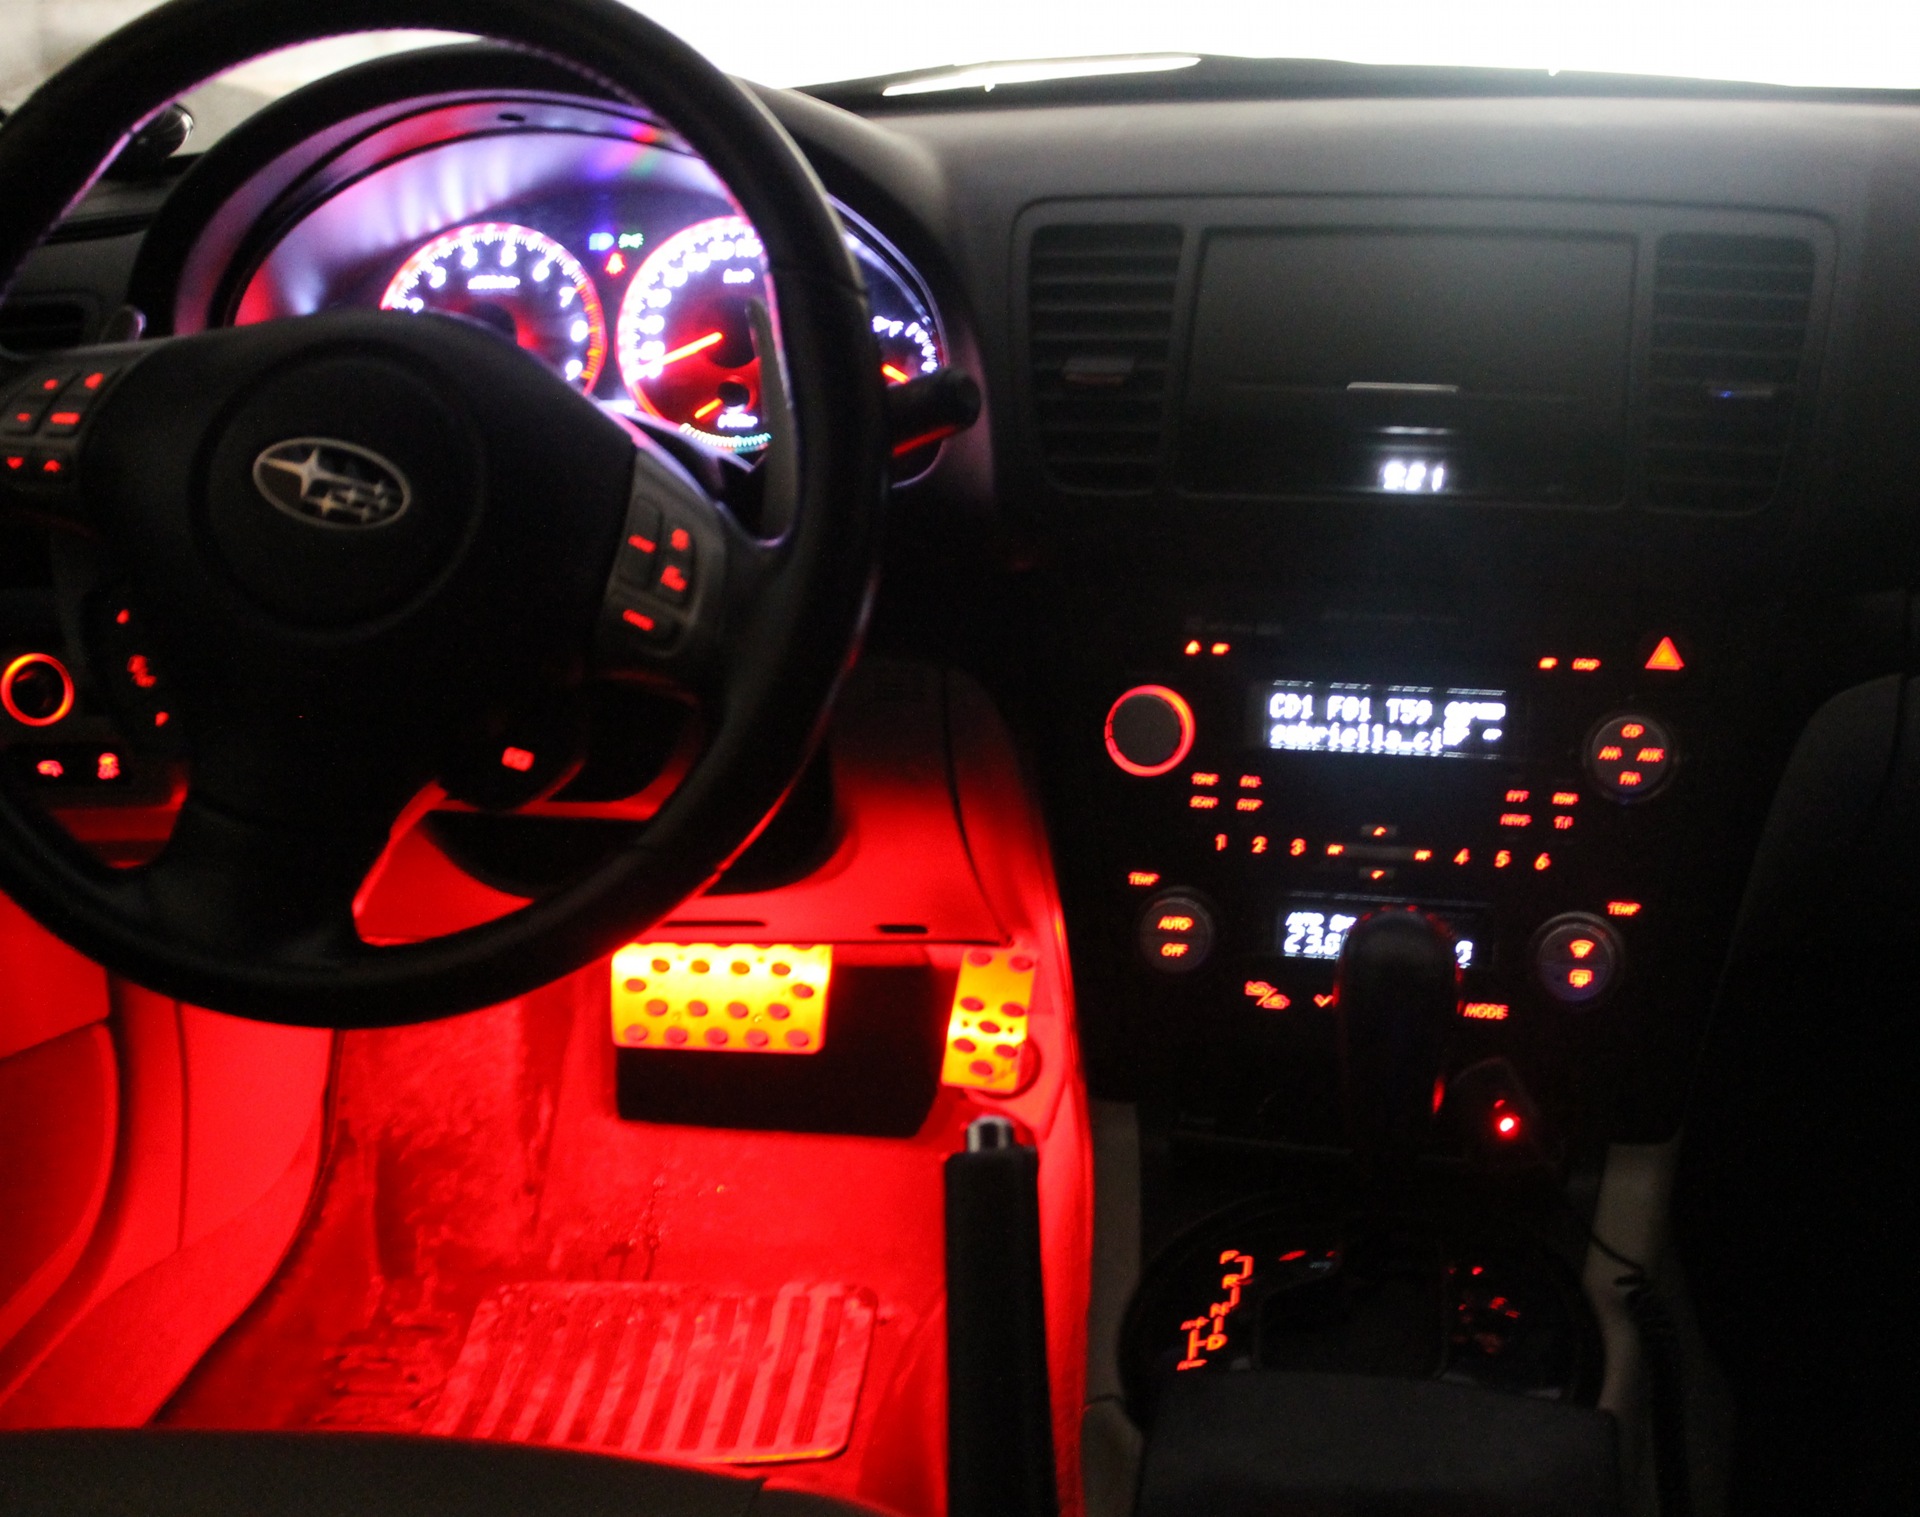 Купить красную подсветку. Легаси bl5 подсветка салона Стоковая. Subaru Forester sh красная подсветка. Подсветка салона Субару Легаси. Подсветка днища Subaru Legacy bl5.